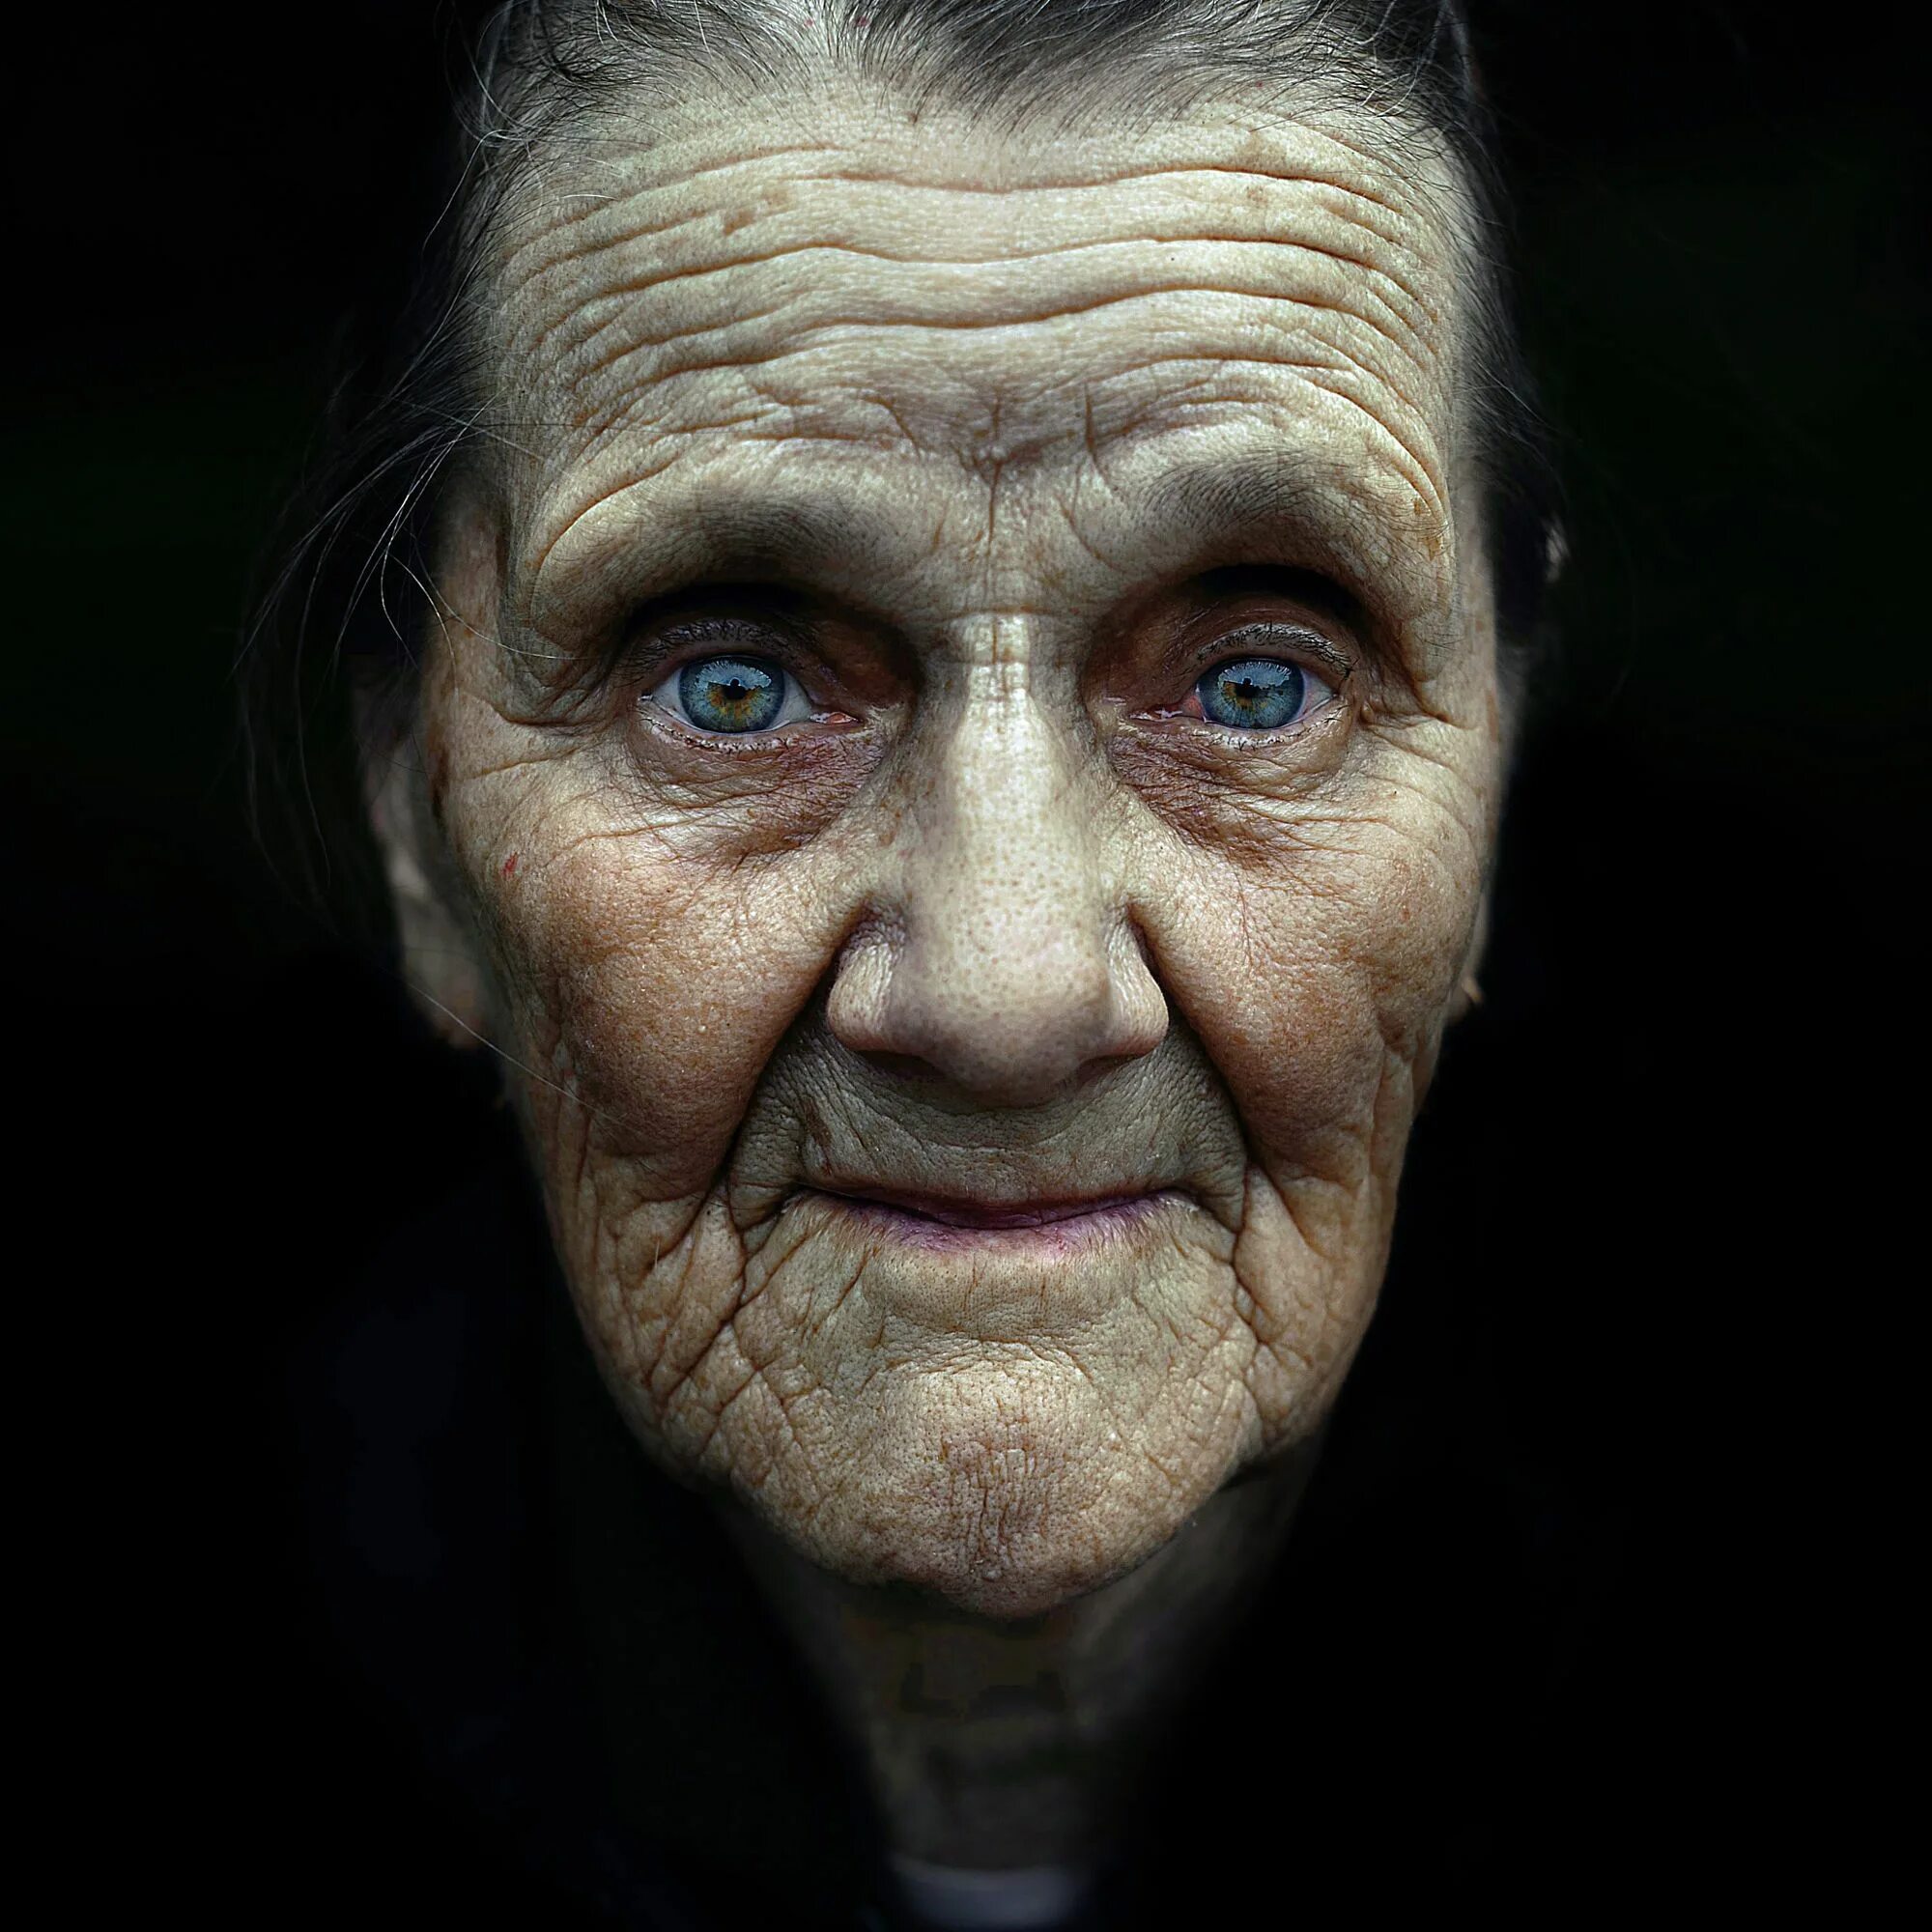 Старую старуху старик. Старческое лицо. Выразительный фотопортрет. Старик морщины. Портрет пожилой женщины.